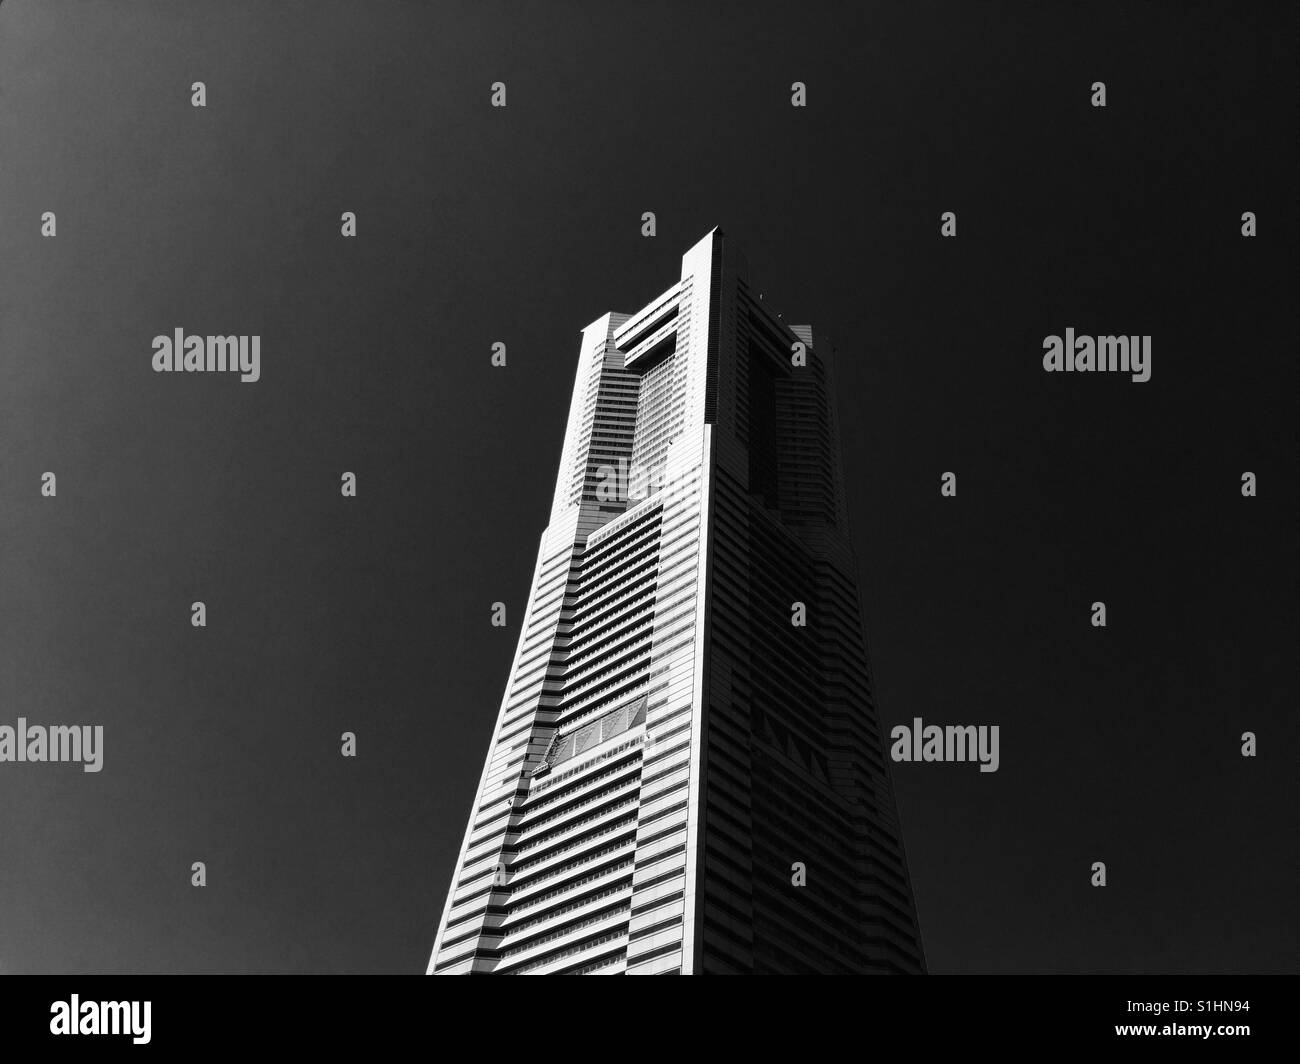 Landmark Tower Stock Photo